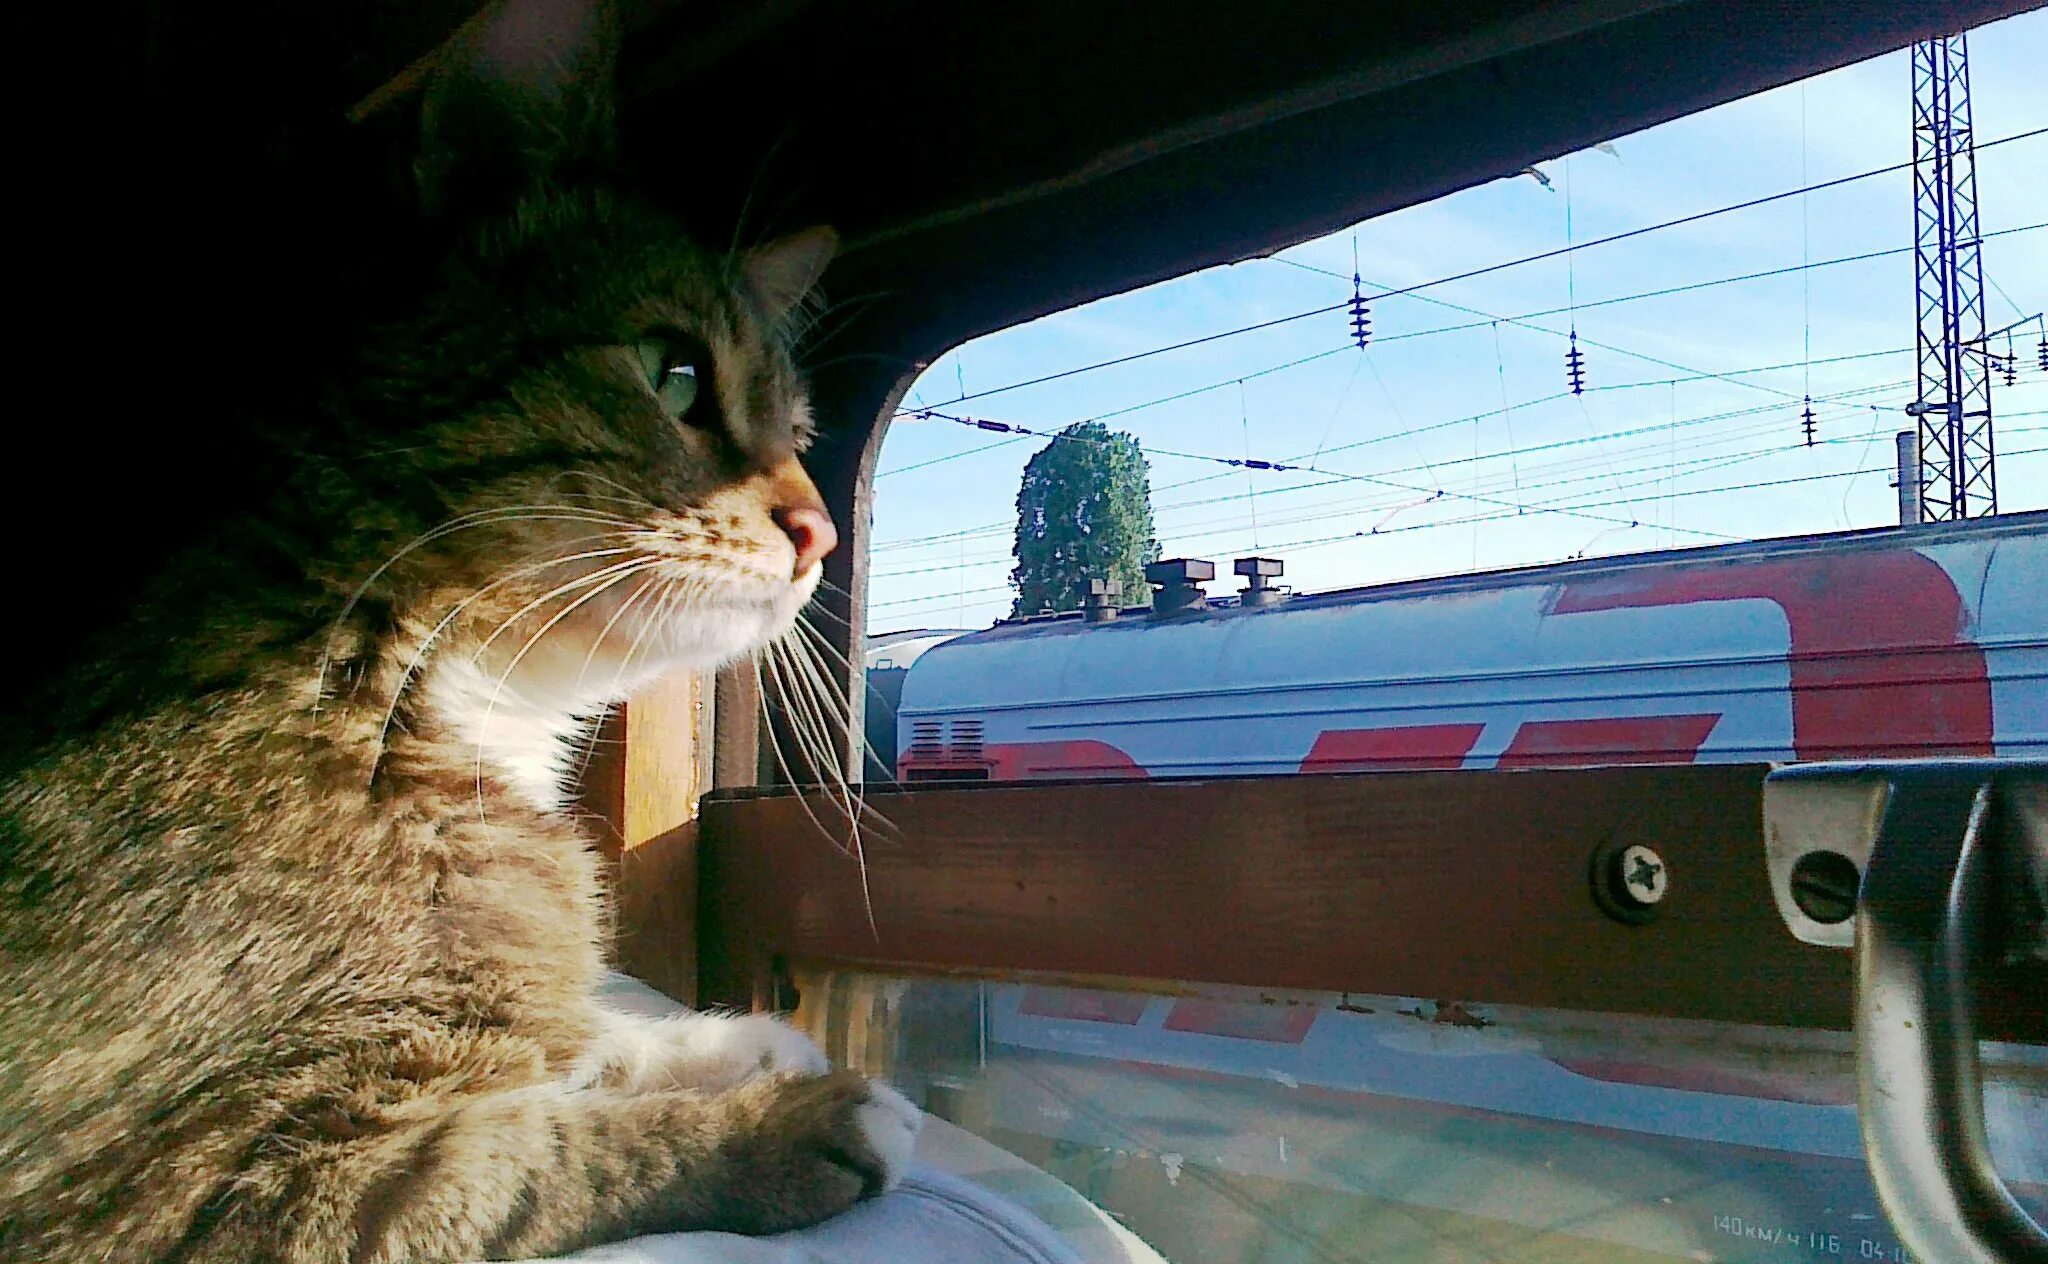 Прикольные картинки поезда. Кот в поезде. Кот едет в поезде. Котик едет в электричке. Кот на железной дороге.